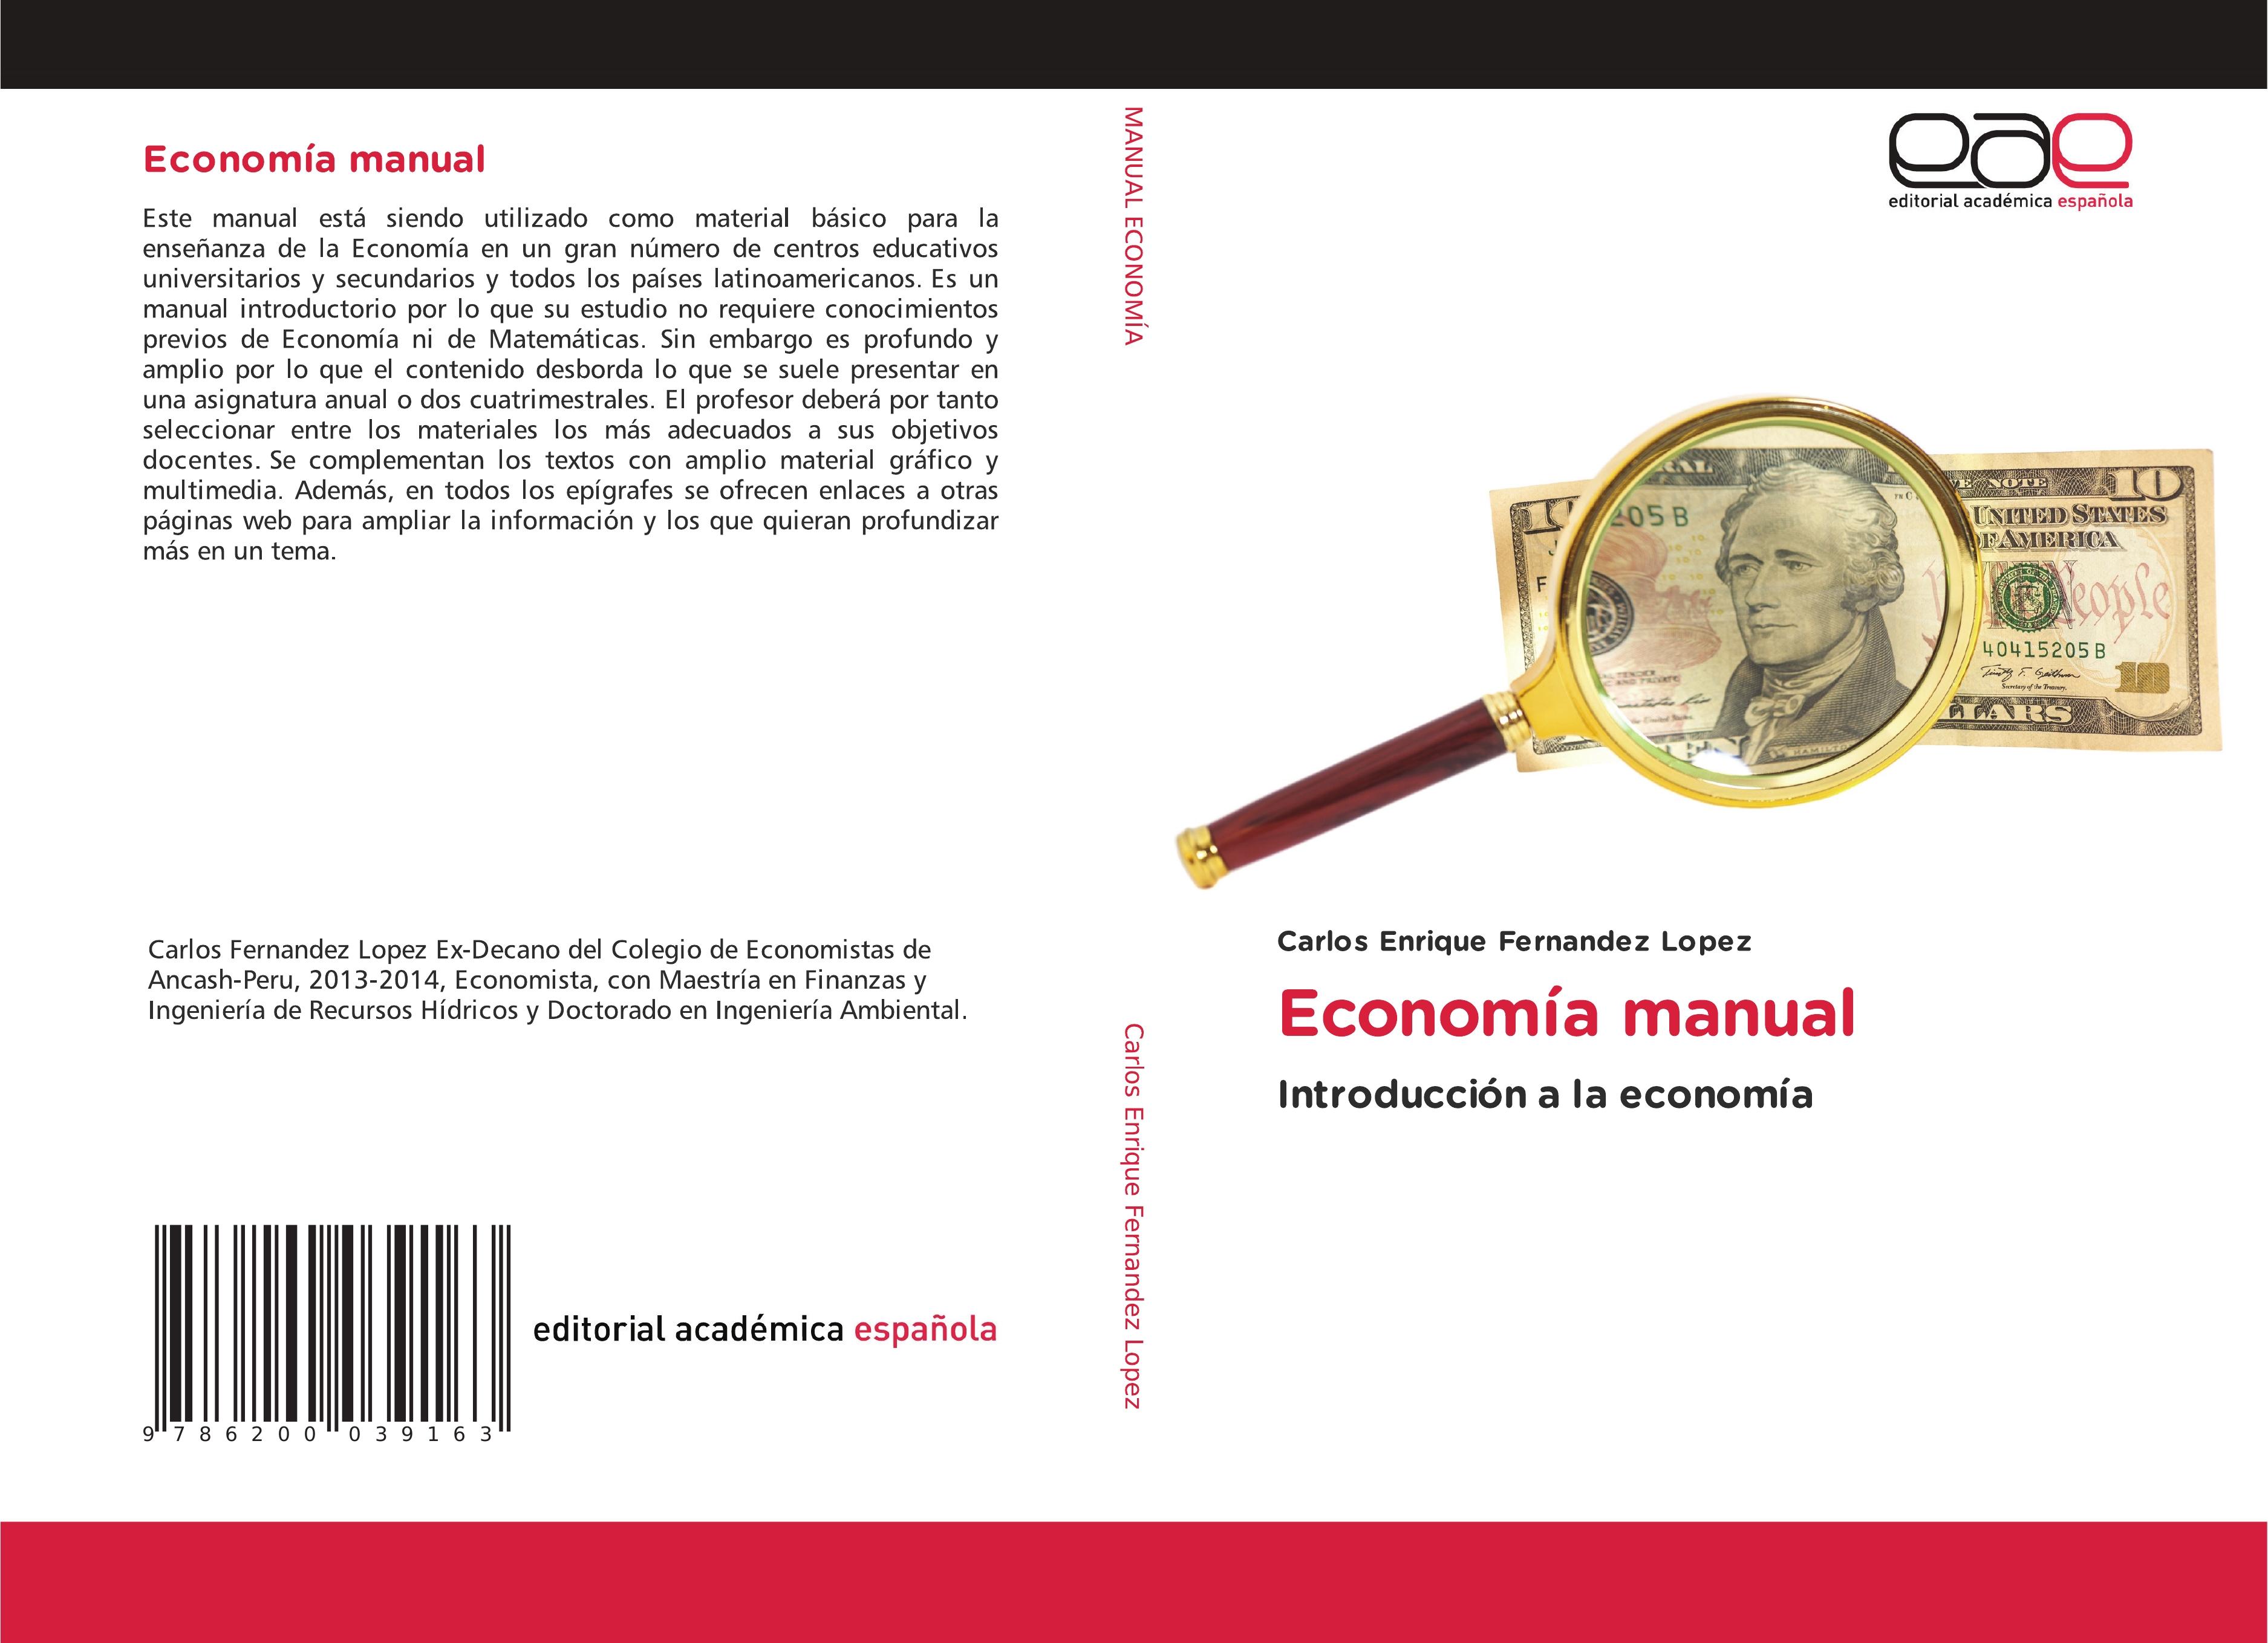 Economía manual - Carlos Enrique Fernandez Lopez